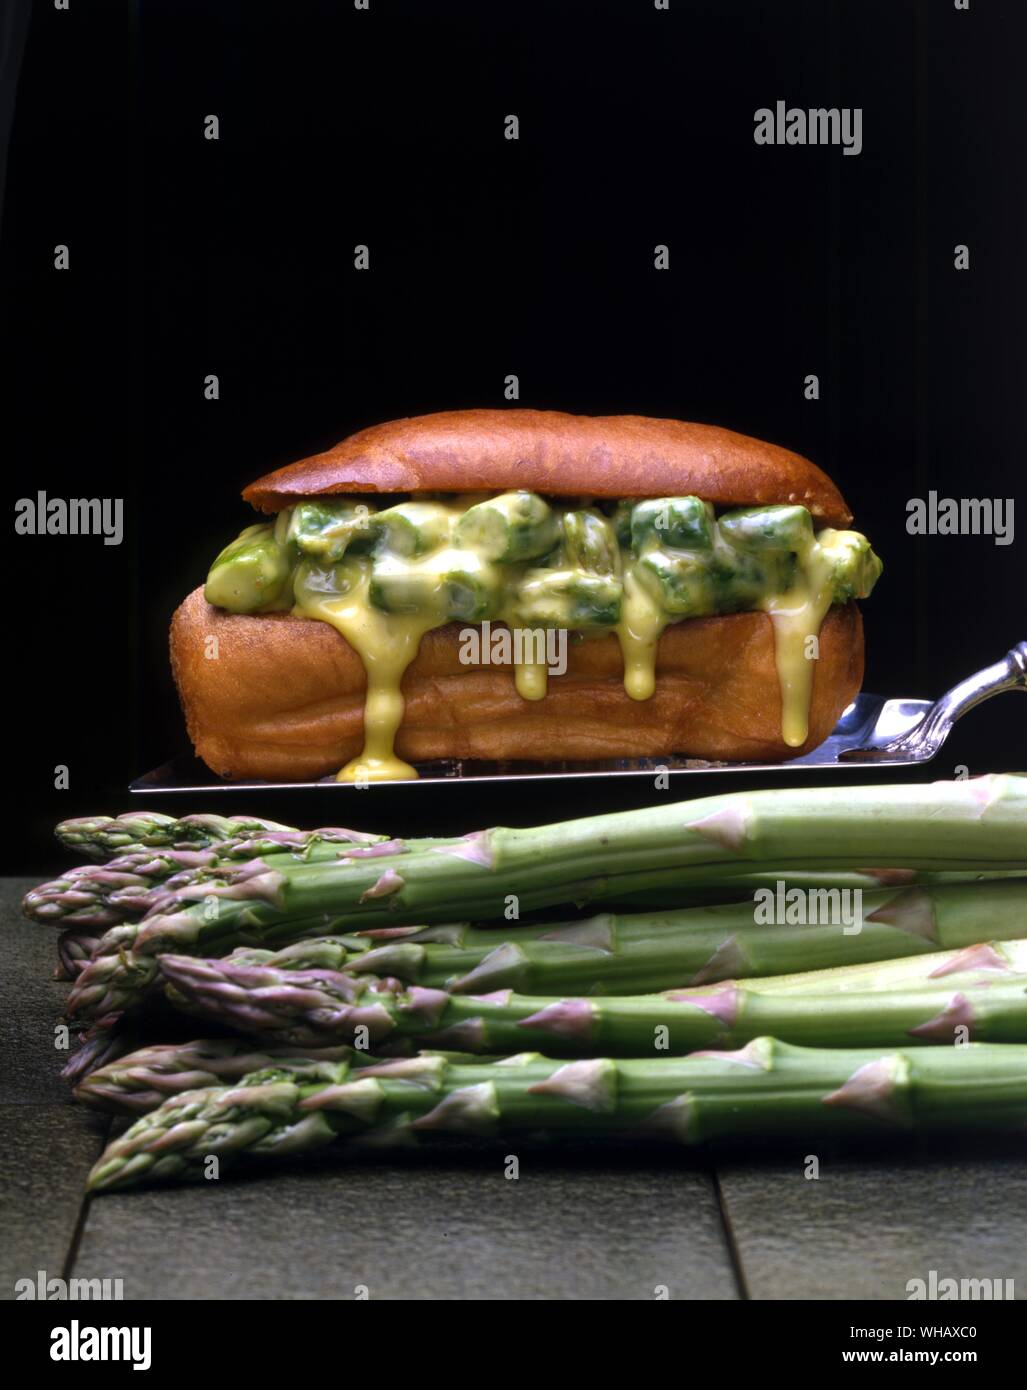 Asparagus in crisp rolls Stock Photo